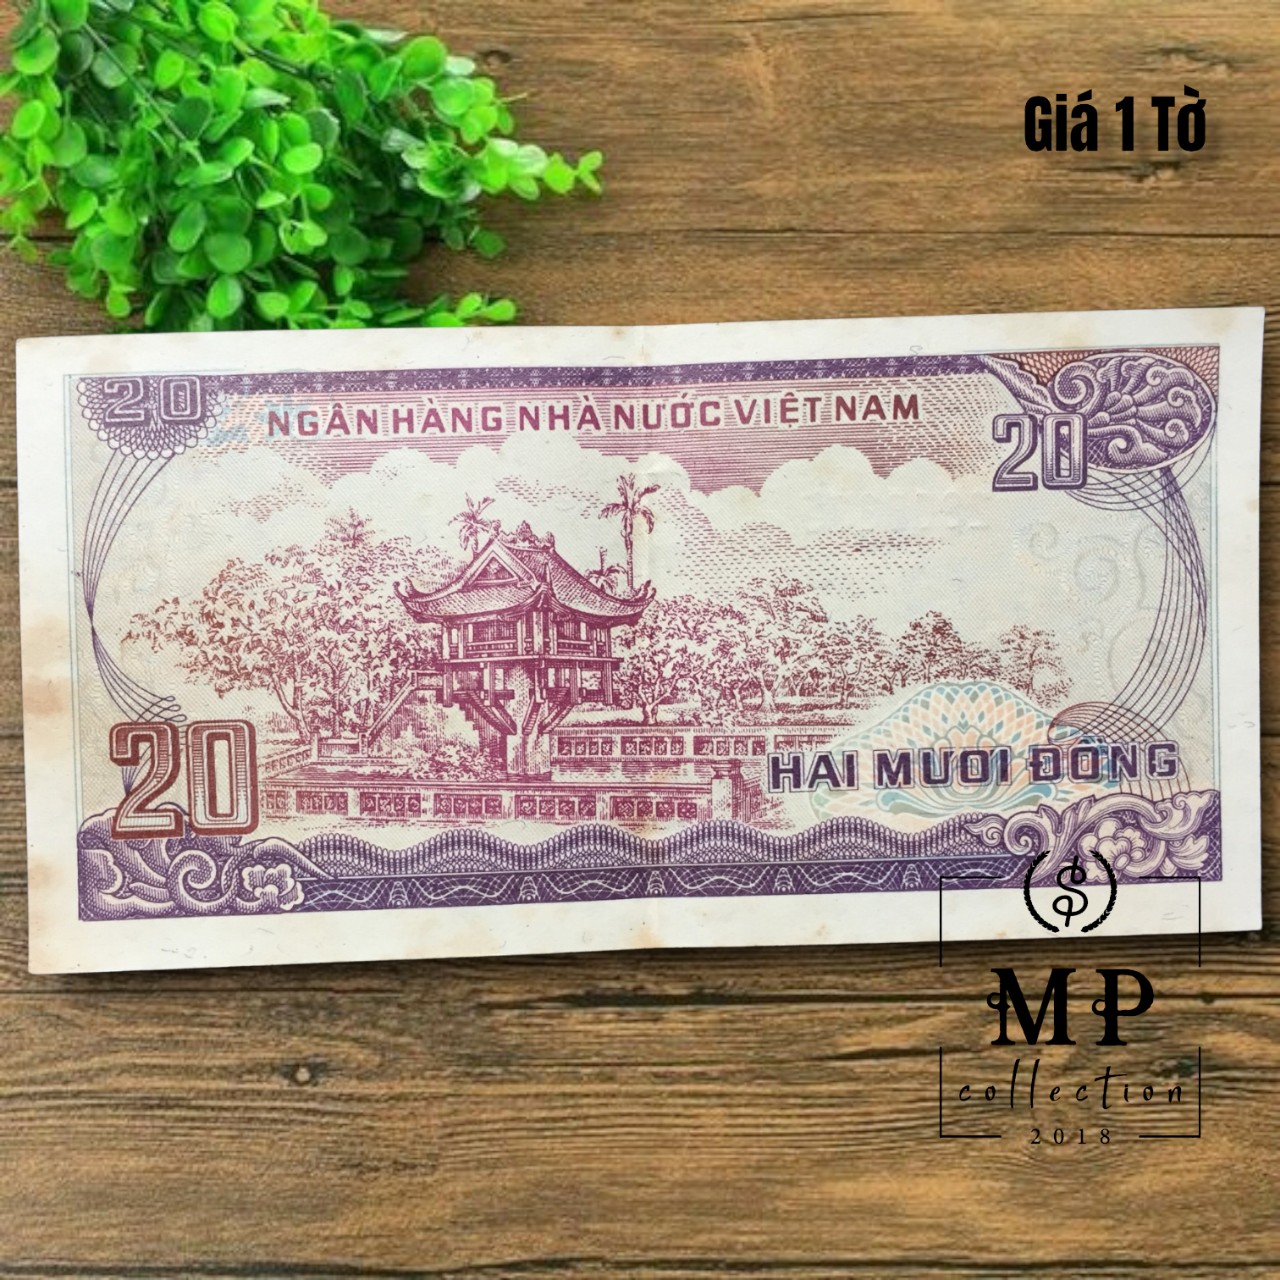 [Chất lượng sáng] Việt Nam 20 đồng 1985 với hình ảnh chùa Một Cột, sưu tầm tiền thời xưa.